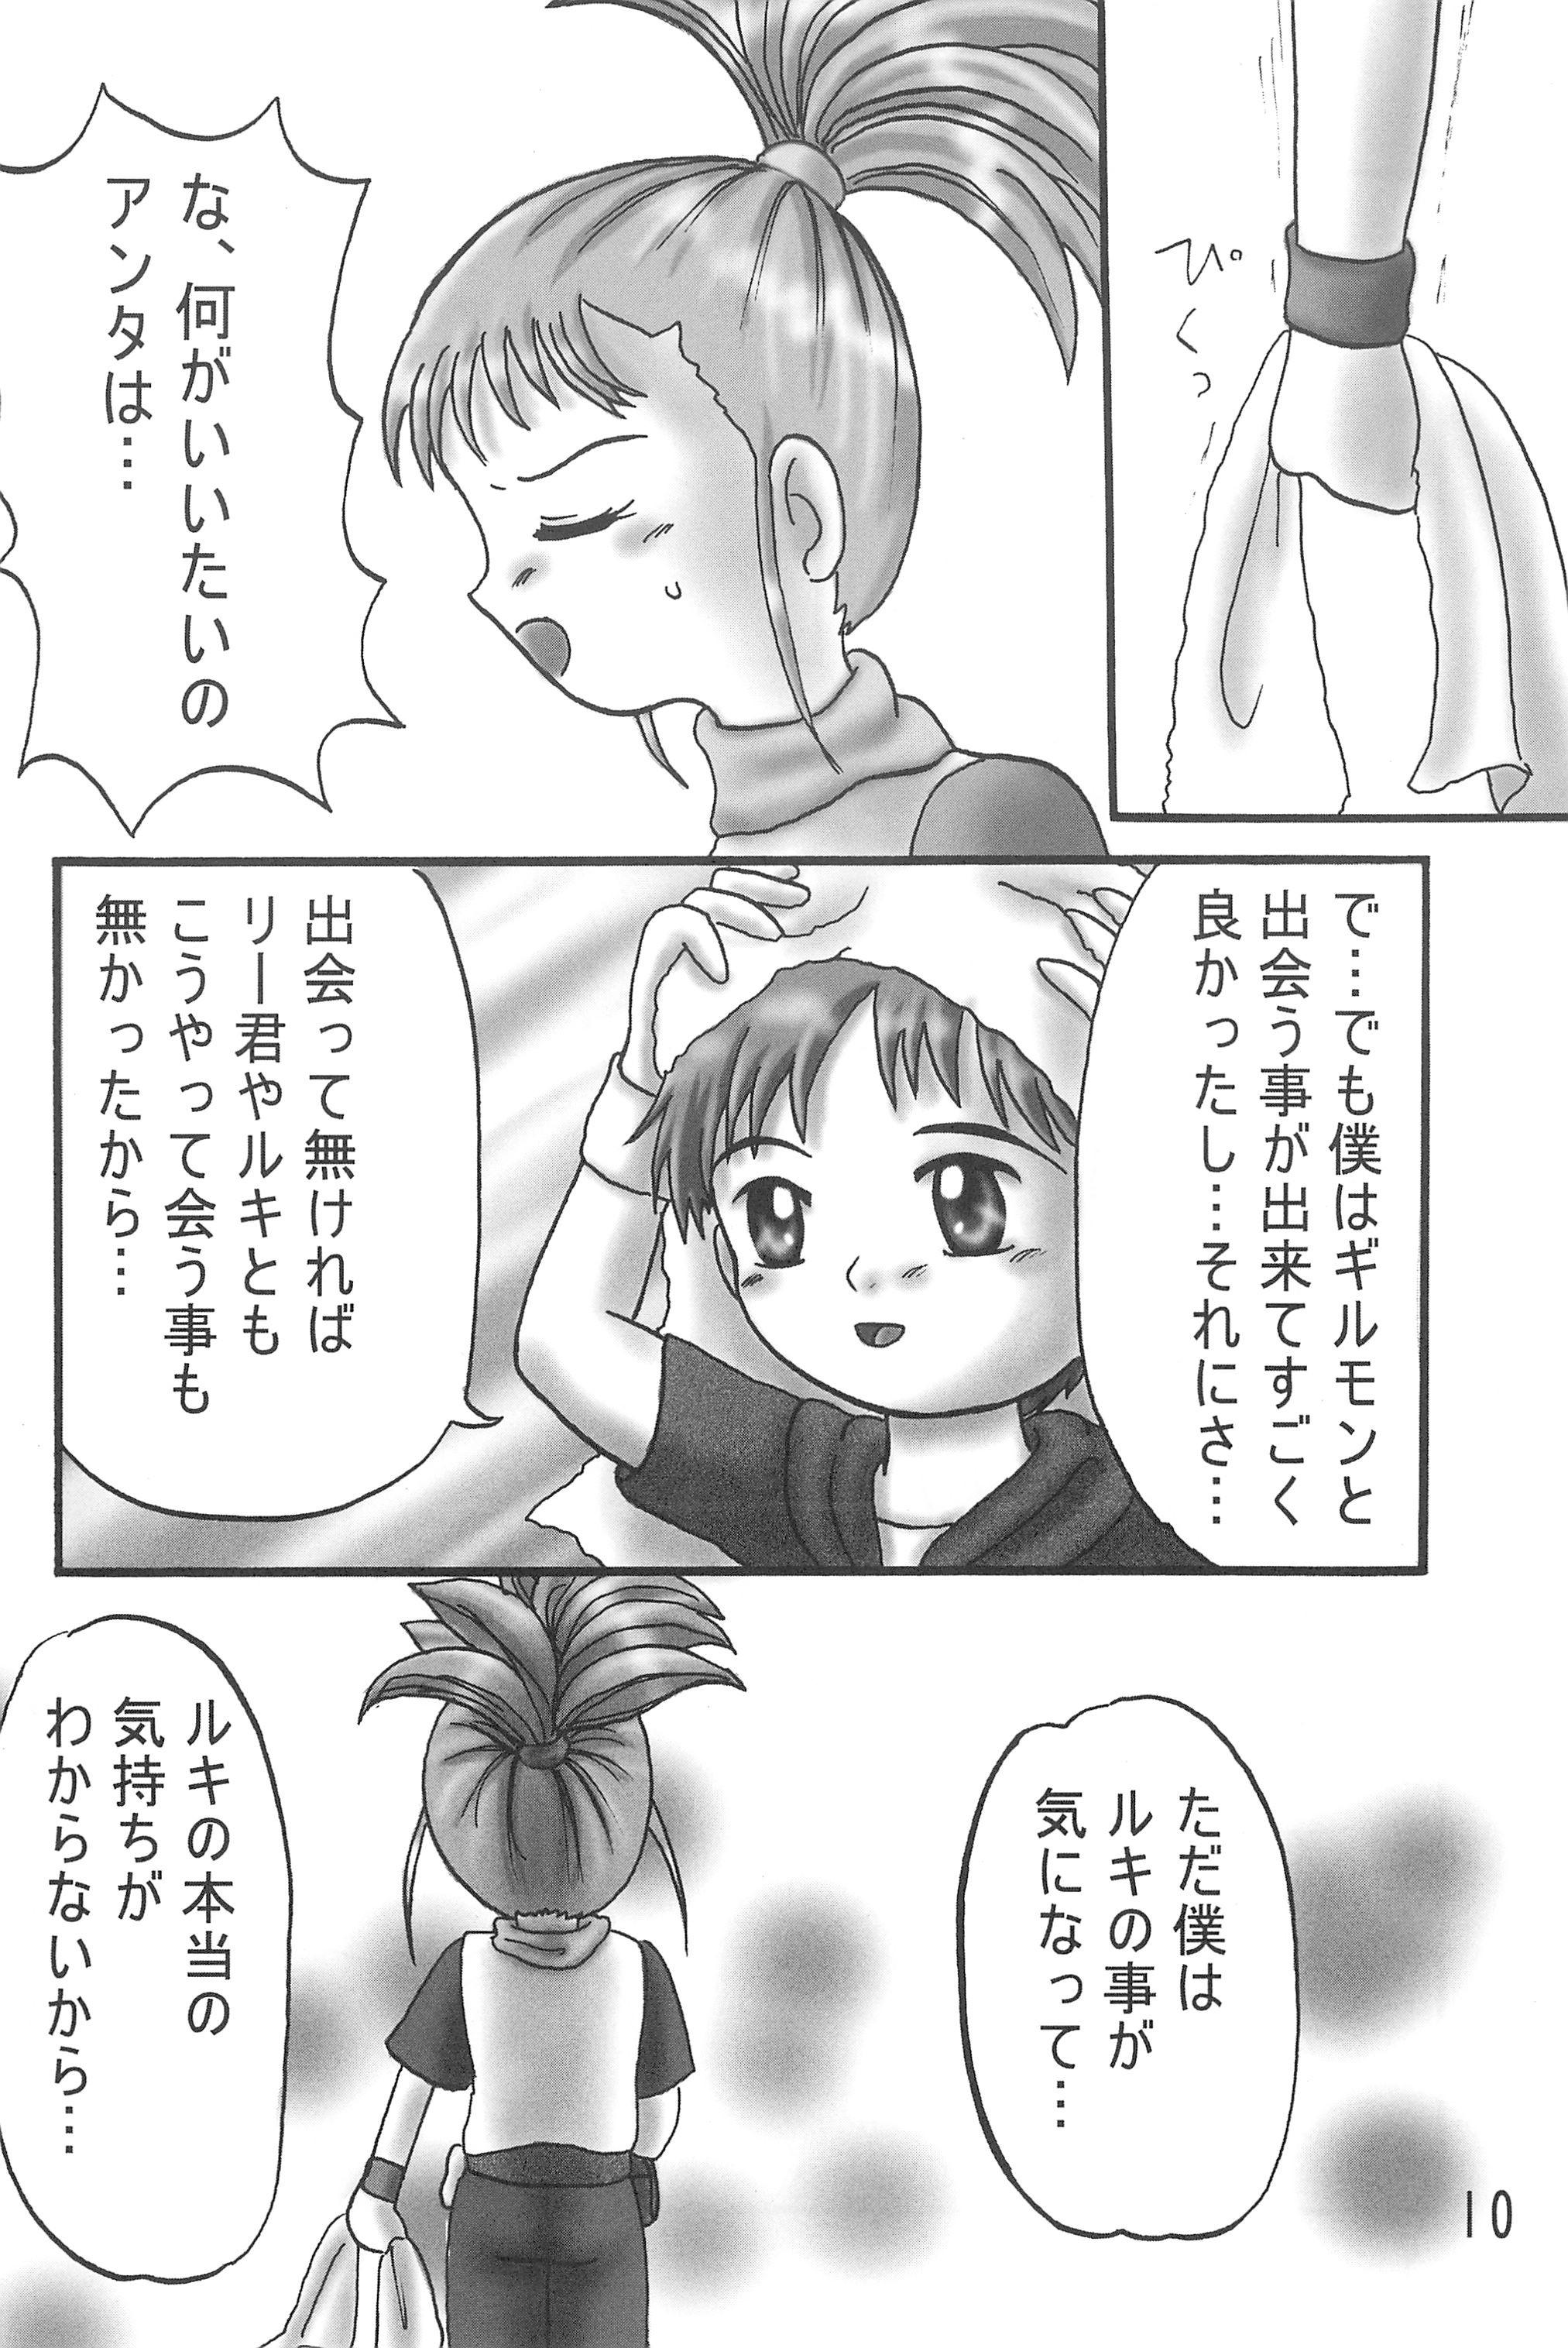 Cutie Kokoro no Mukou ni... - Digimon tamers Boss - Page 12